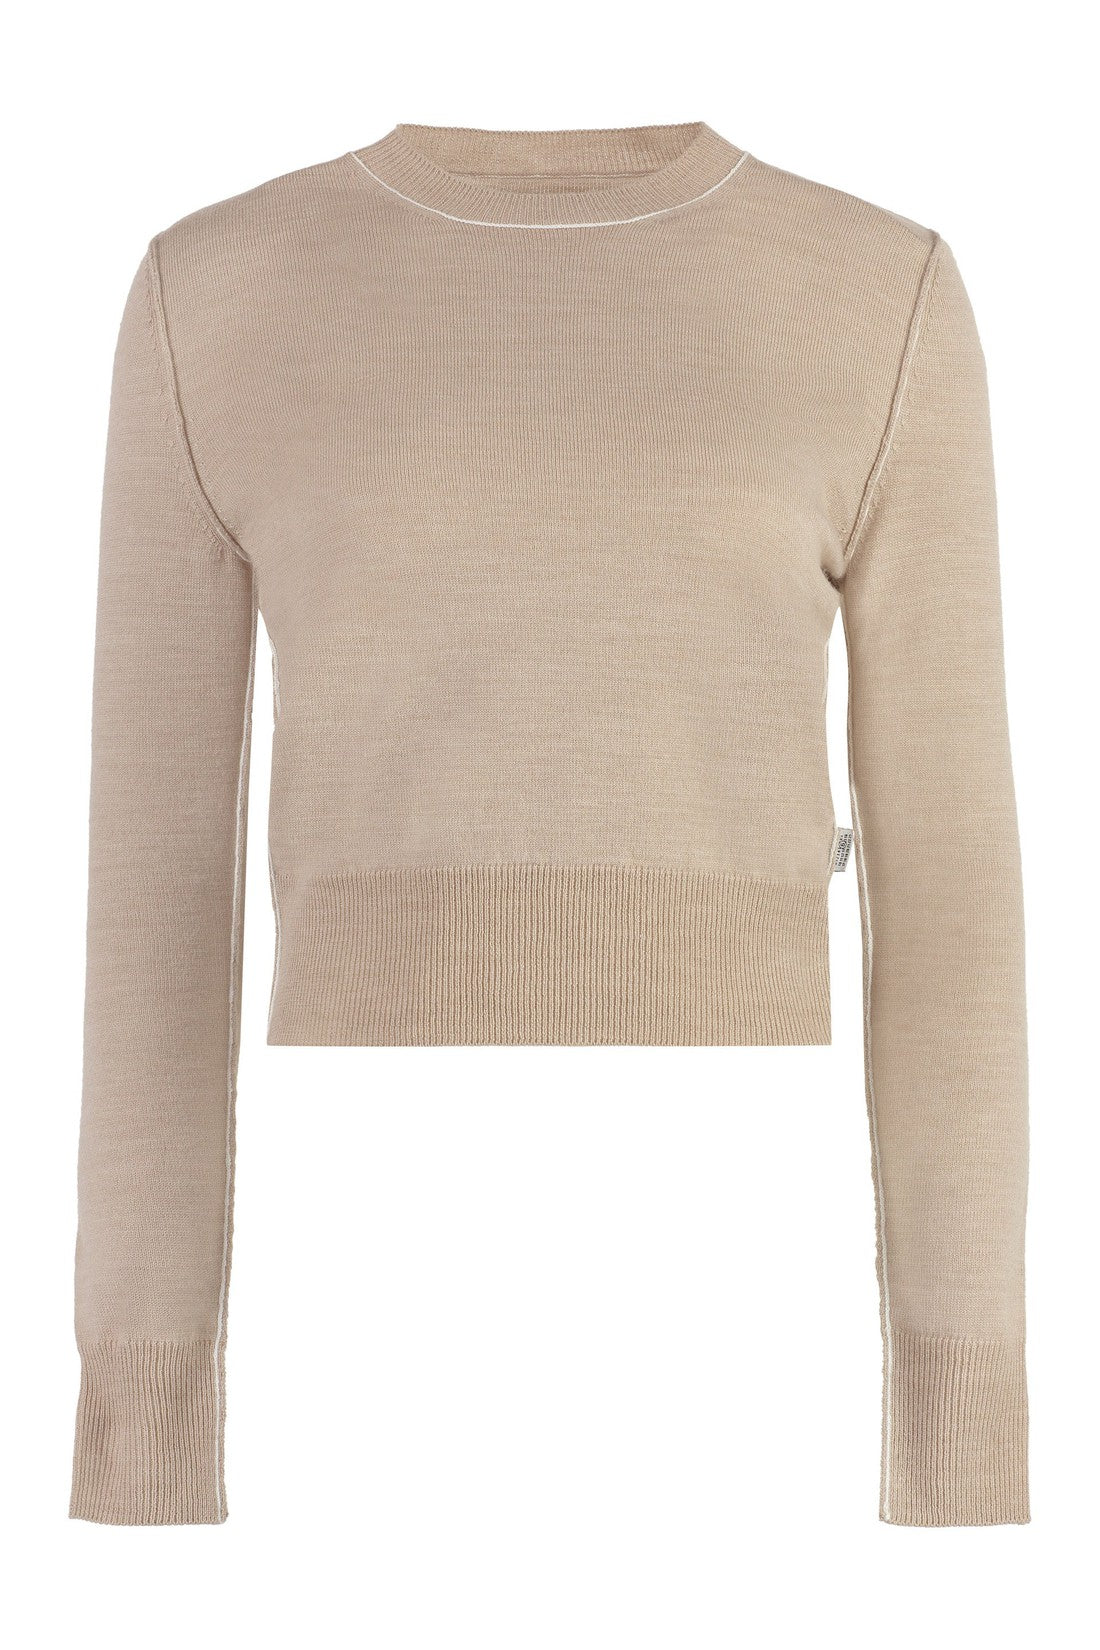 MM6 Maison Margiela-OUTLET-SALE-Wool-blend crew-neck sweater-ARCHIVIST